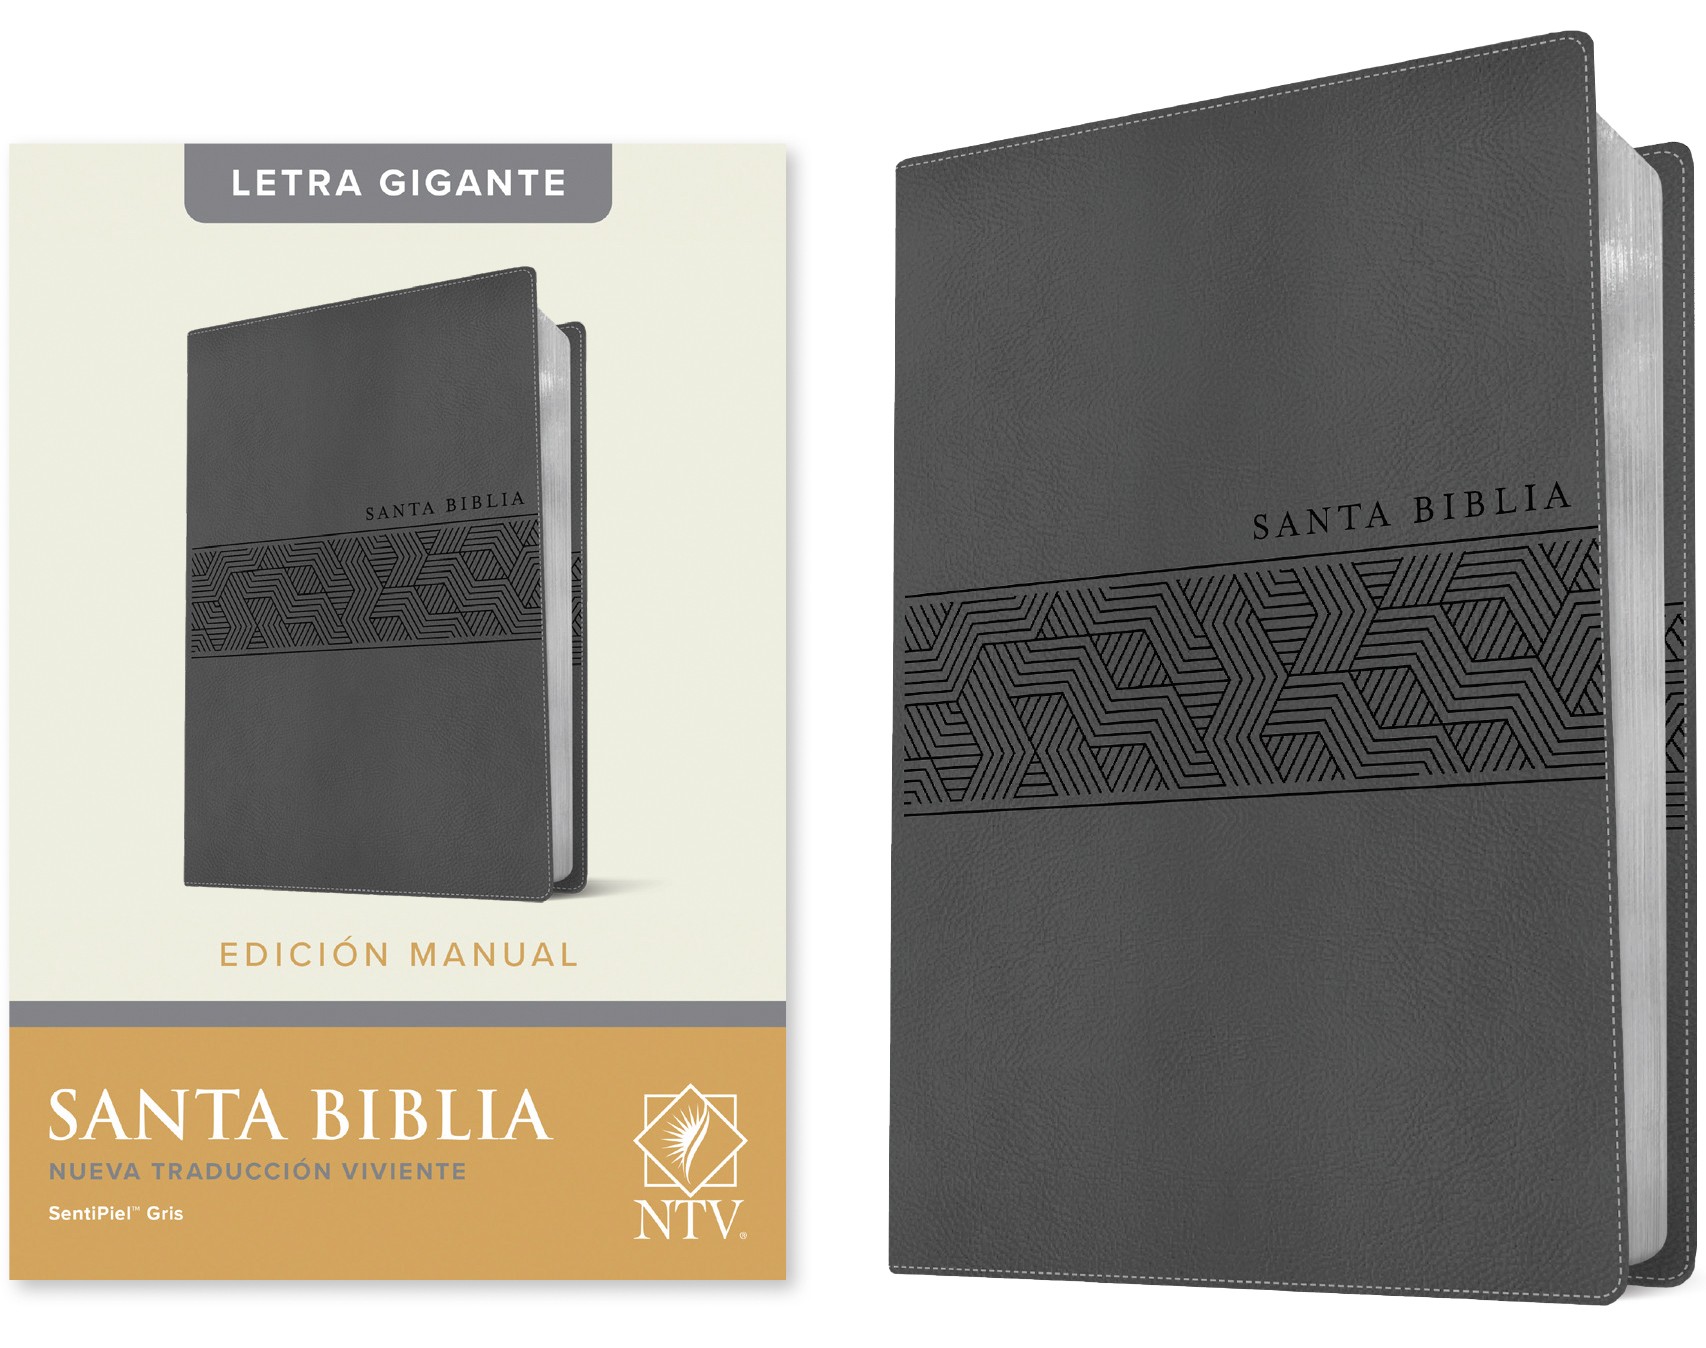  Santa Biblia NTV, Edición manual, letra gigante (Letra Roja, SentiPiel, Gris)